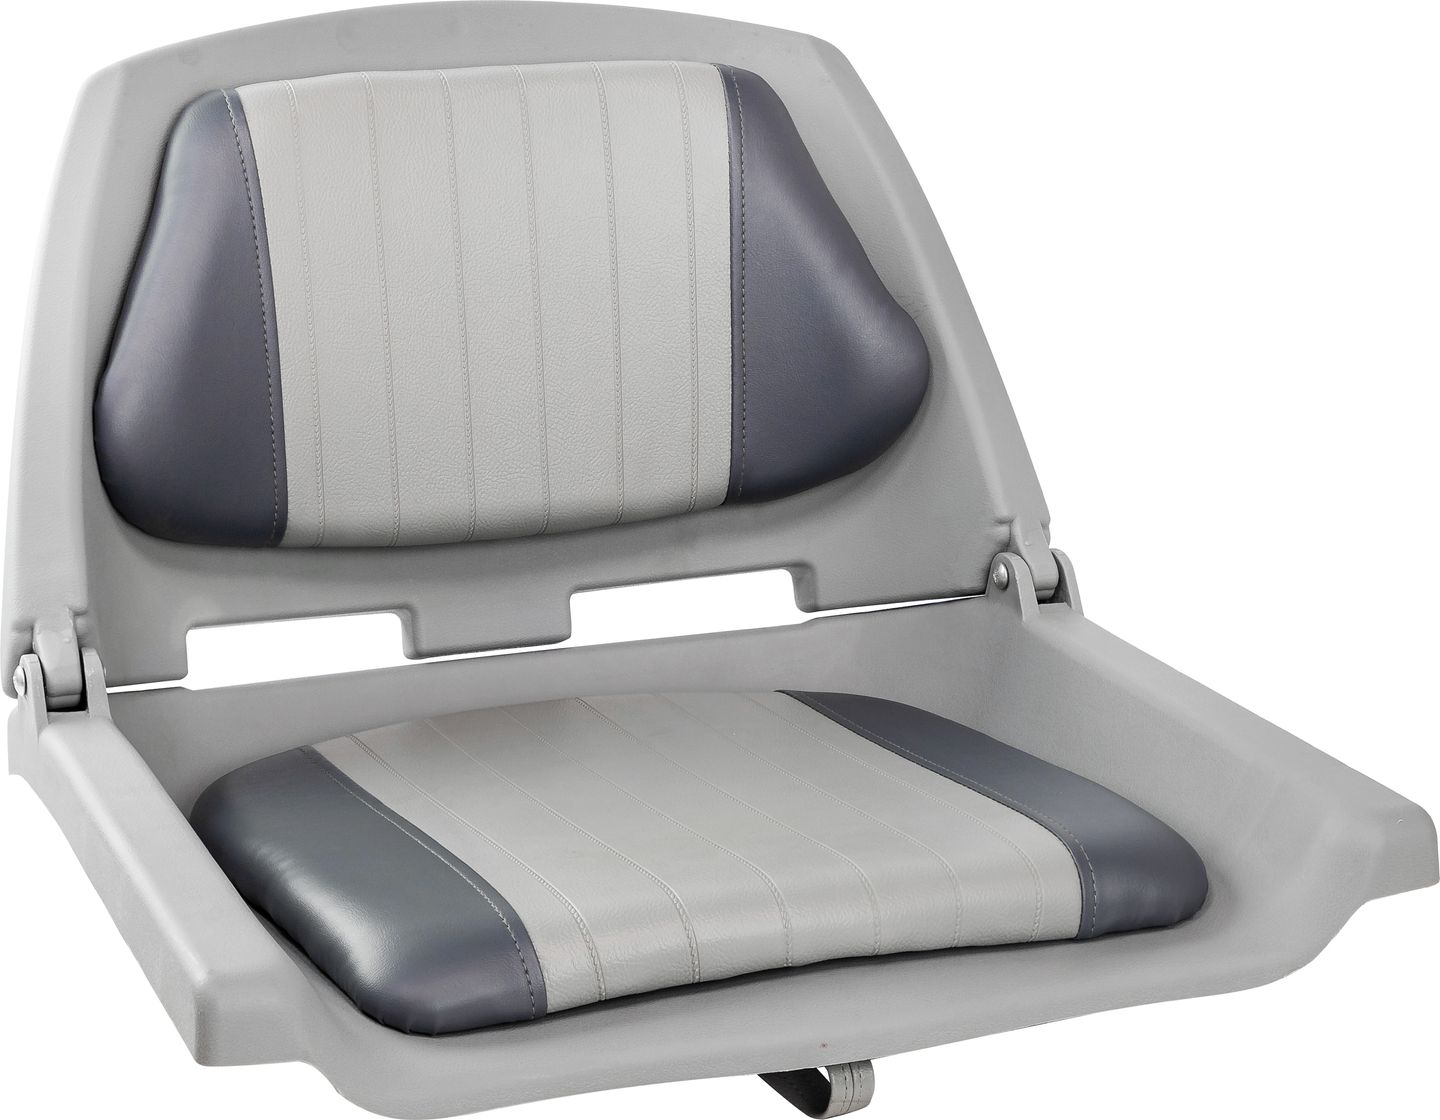 Кресло мягкое складное, серое/серое C12508G кресло пластмассовое складное folding plastic boat seat серое 75110g